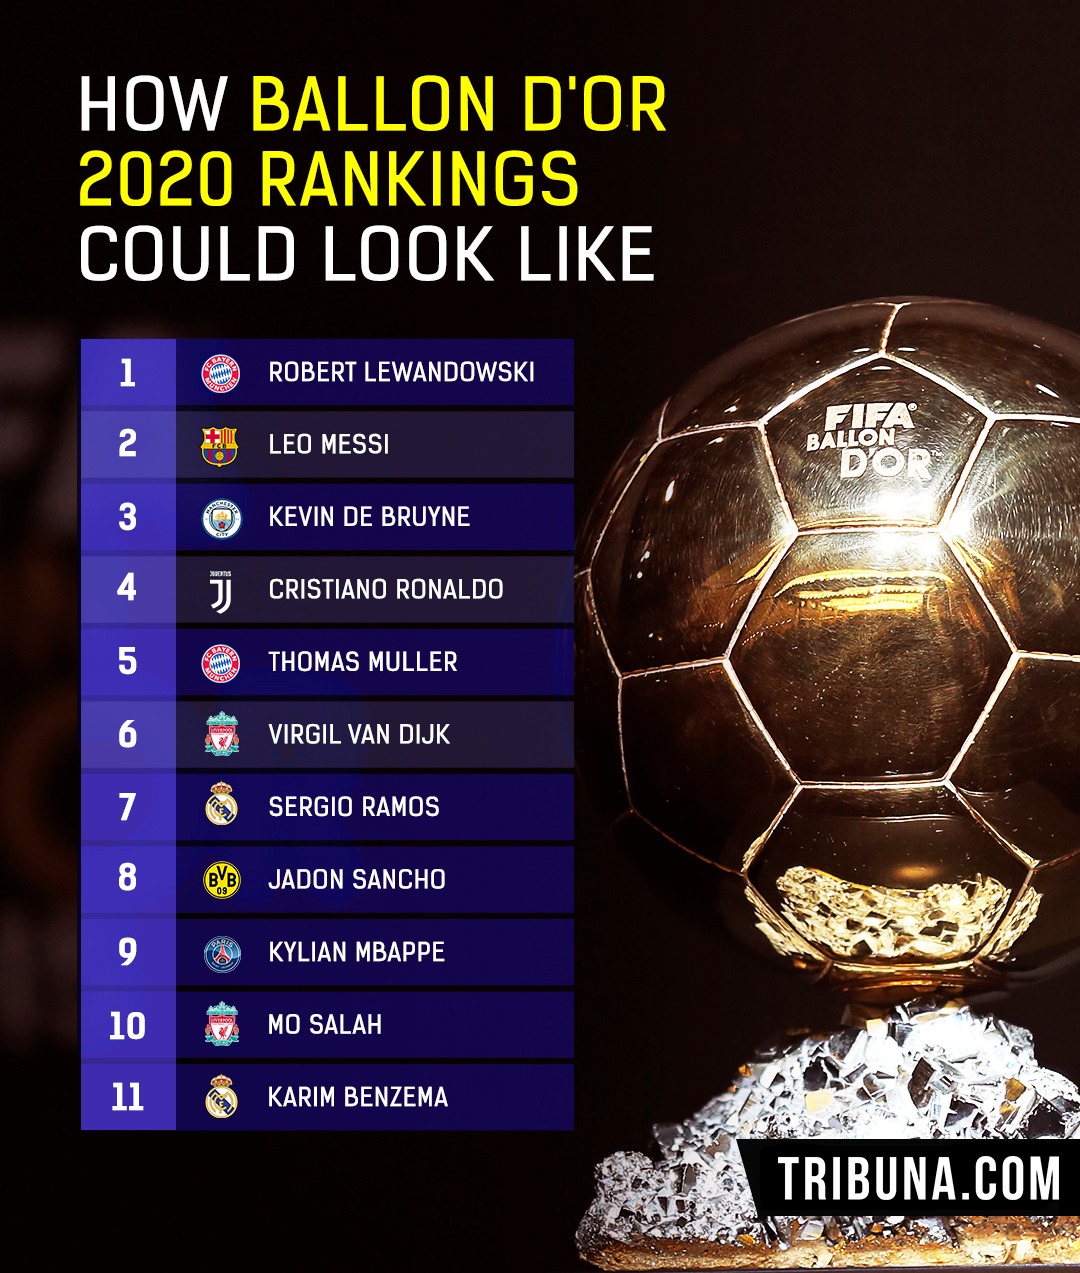 Dor ranking 2021 ballon Top 10